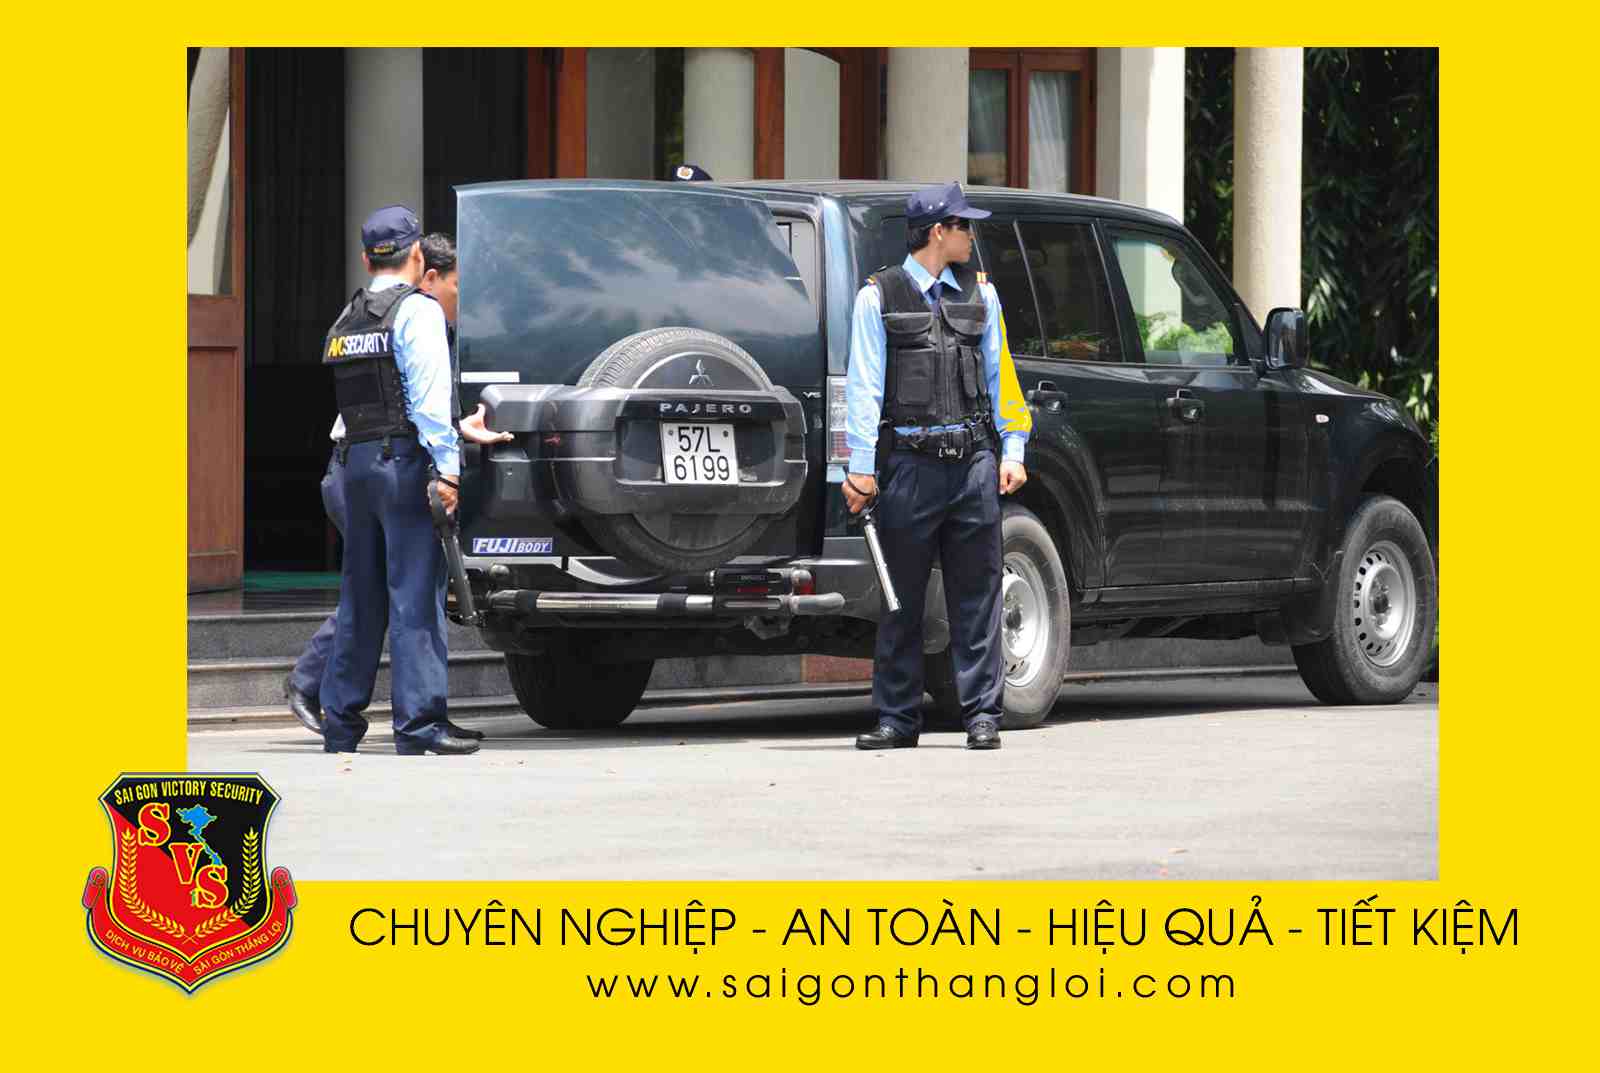 Công ty Sài Gòn Thắng Lợi cung cấp dịch vụ bảo vệ